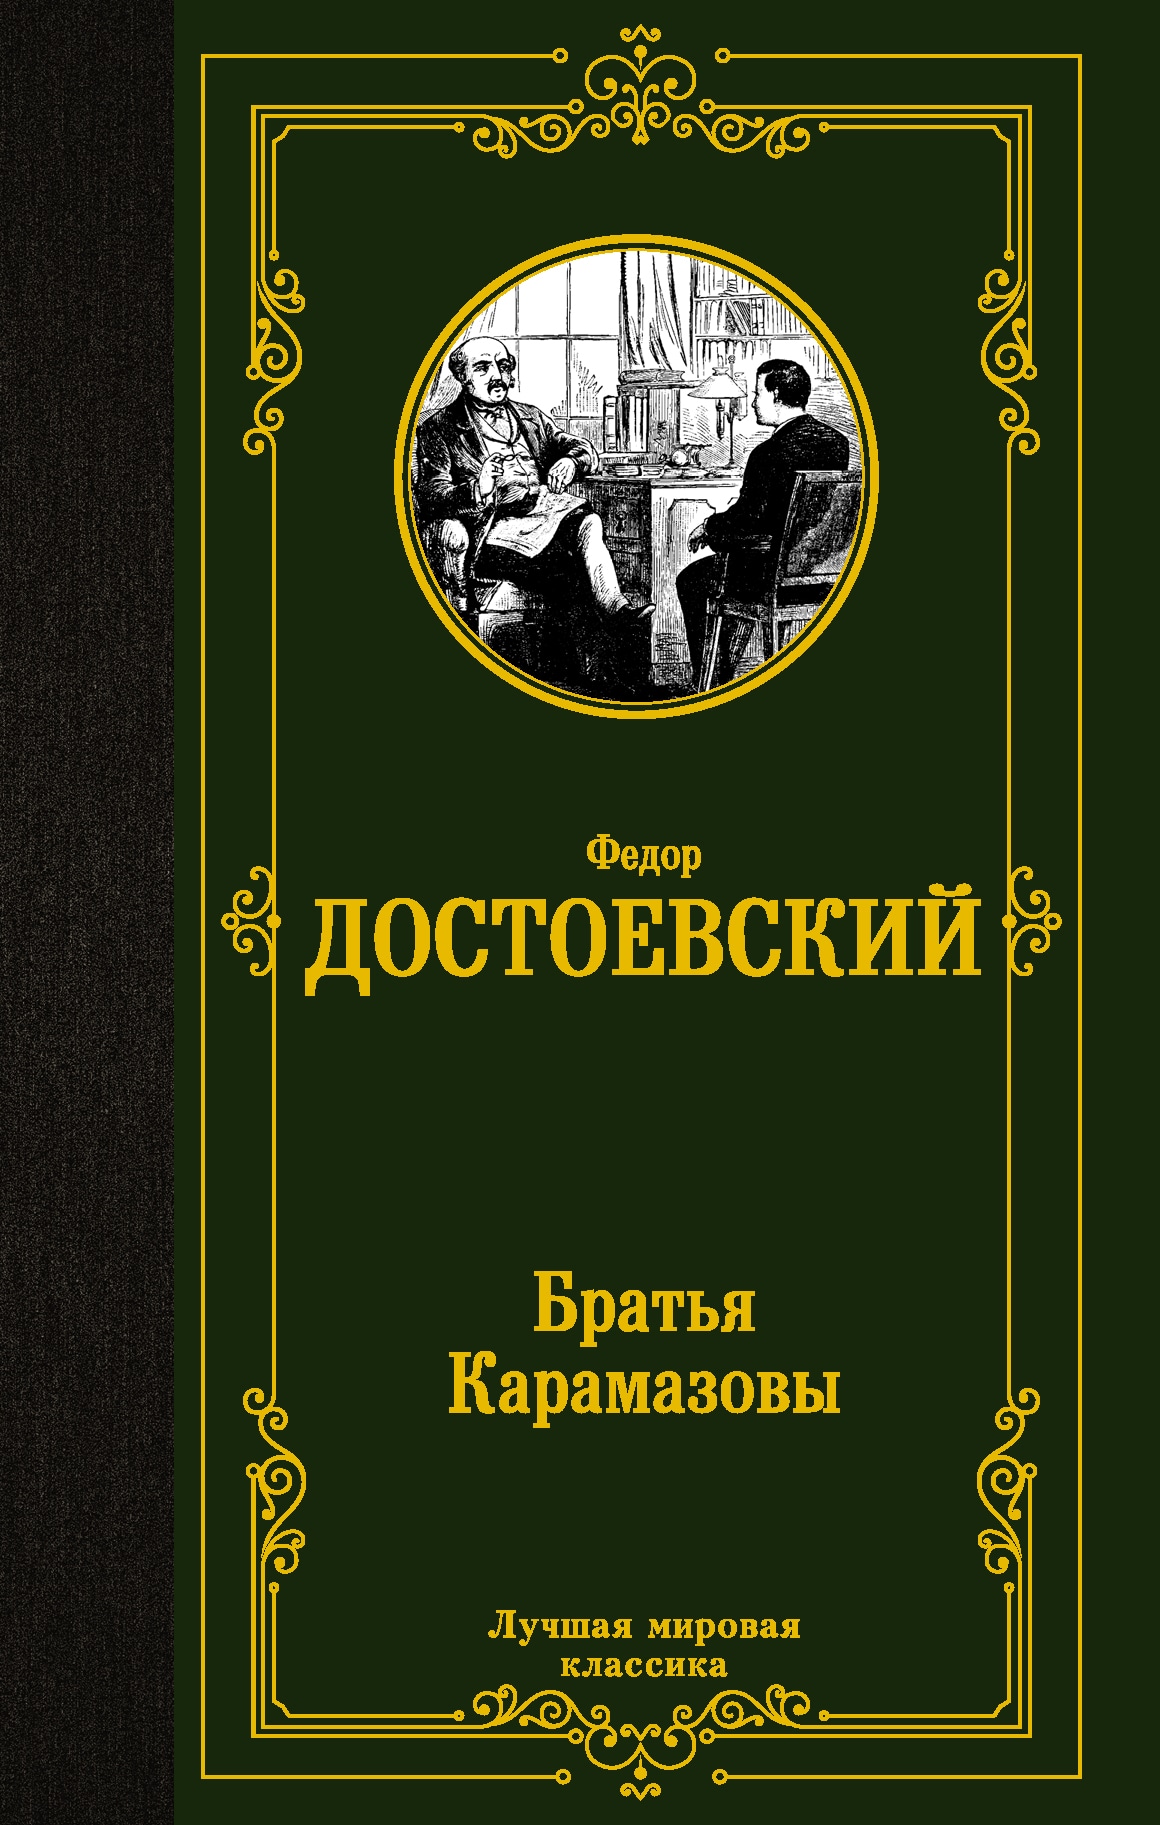 Книга «Братья Карамазовы» Федор Достоевский — 4 июня 2021 г.